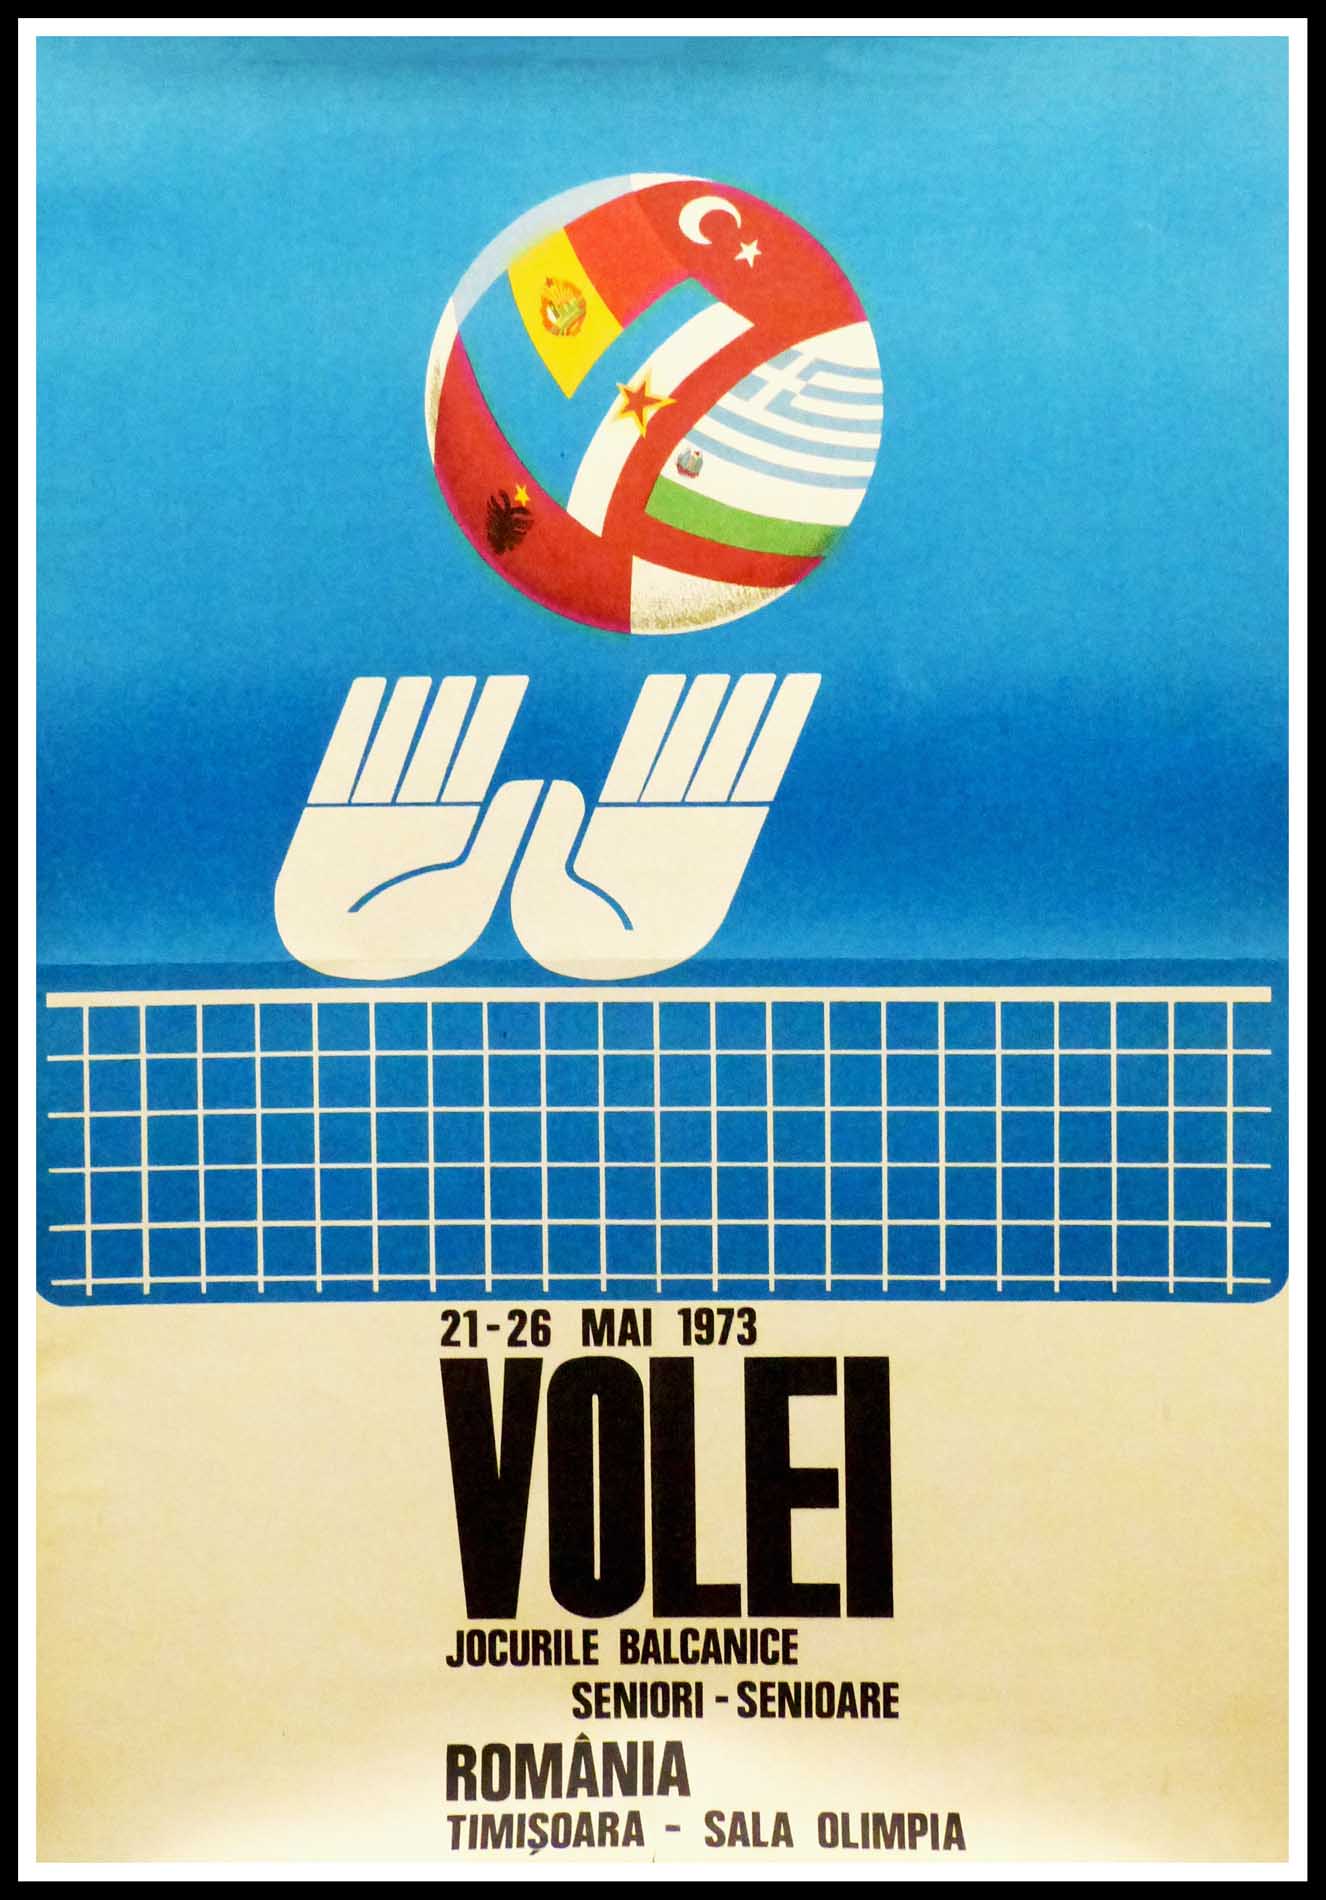 (alt="Affiche originale de sport - Championnats des Balkans de Volleyball en Romania - 1973, réalisation et impression : inconnue")